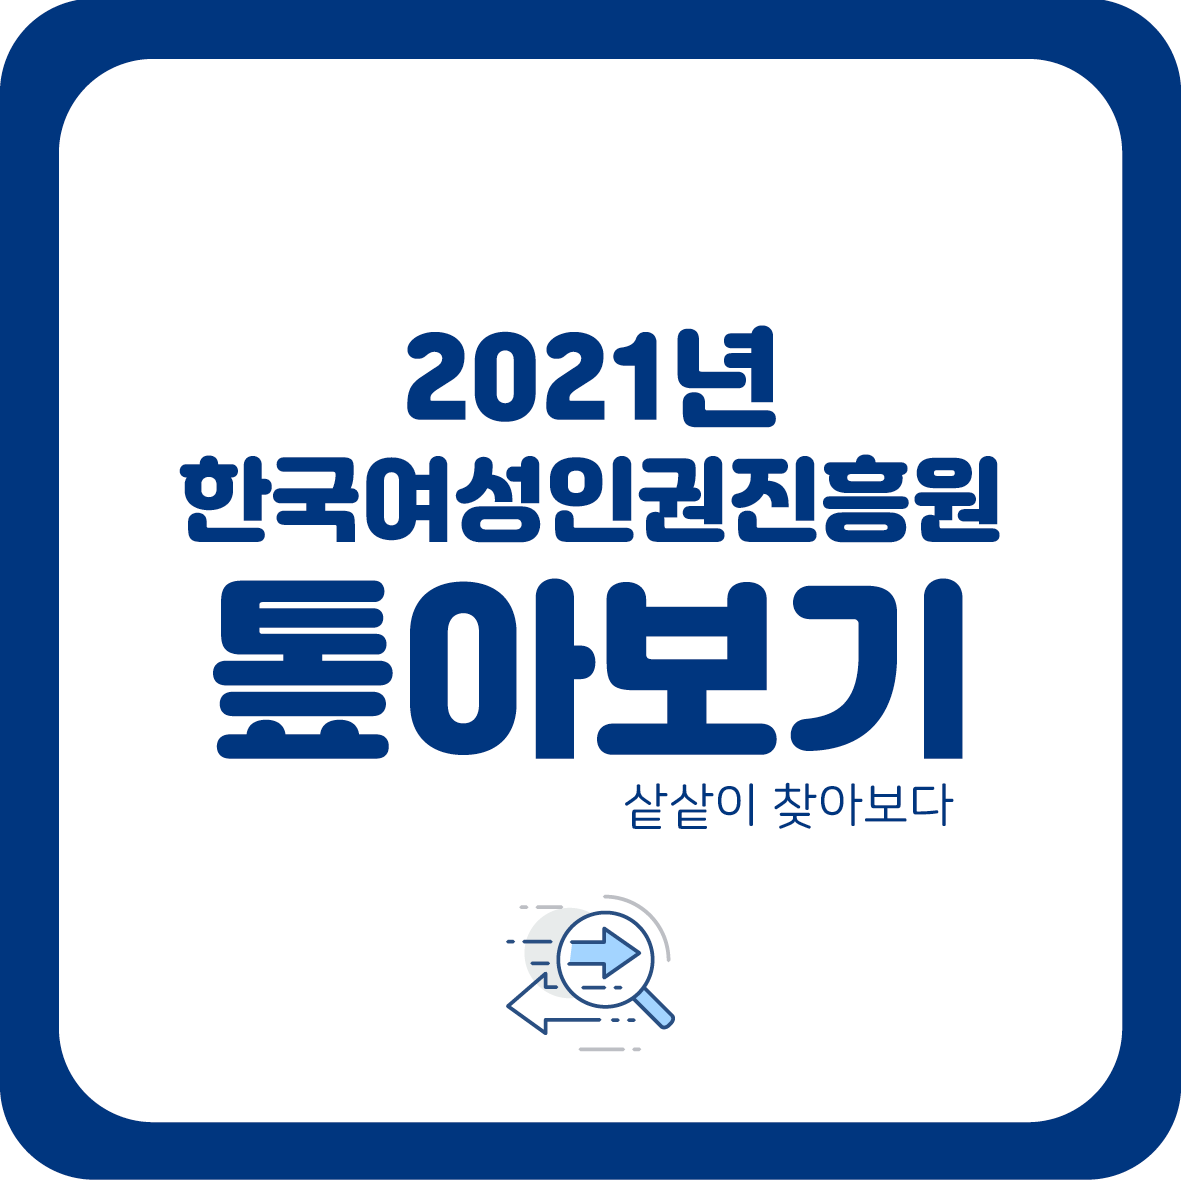 2021년 한국여성인권진흥원 톺아보기 샅샅이 찾아보다